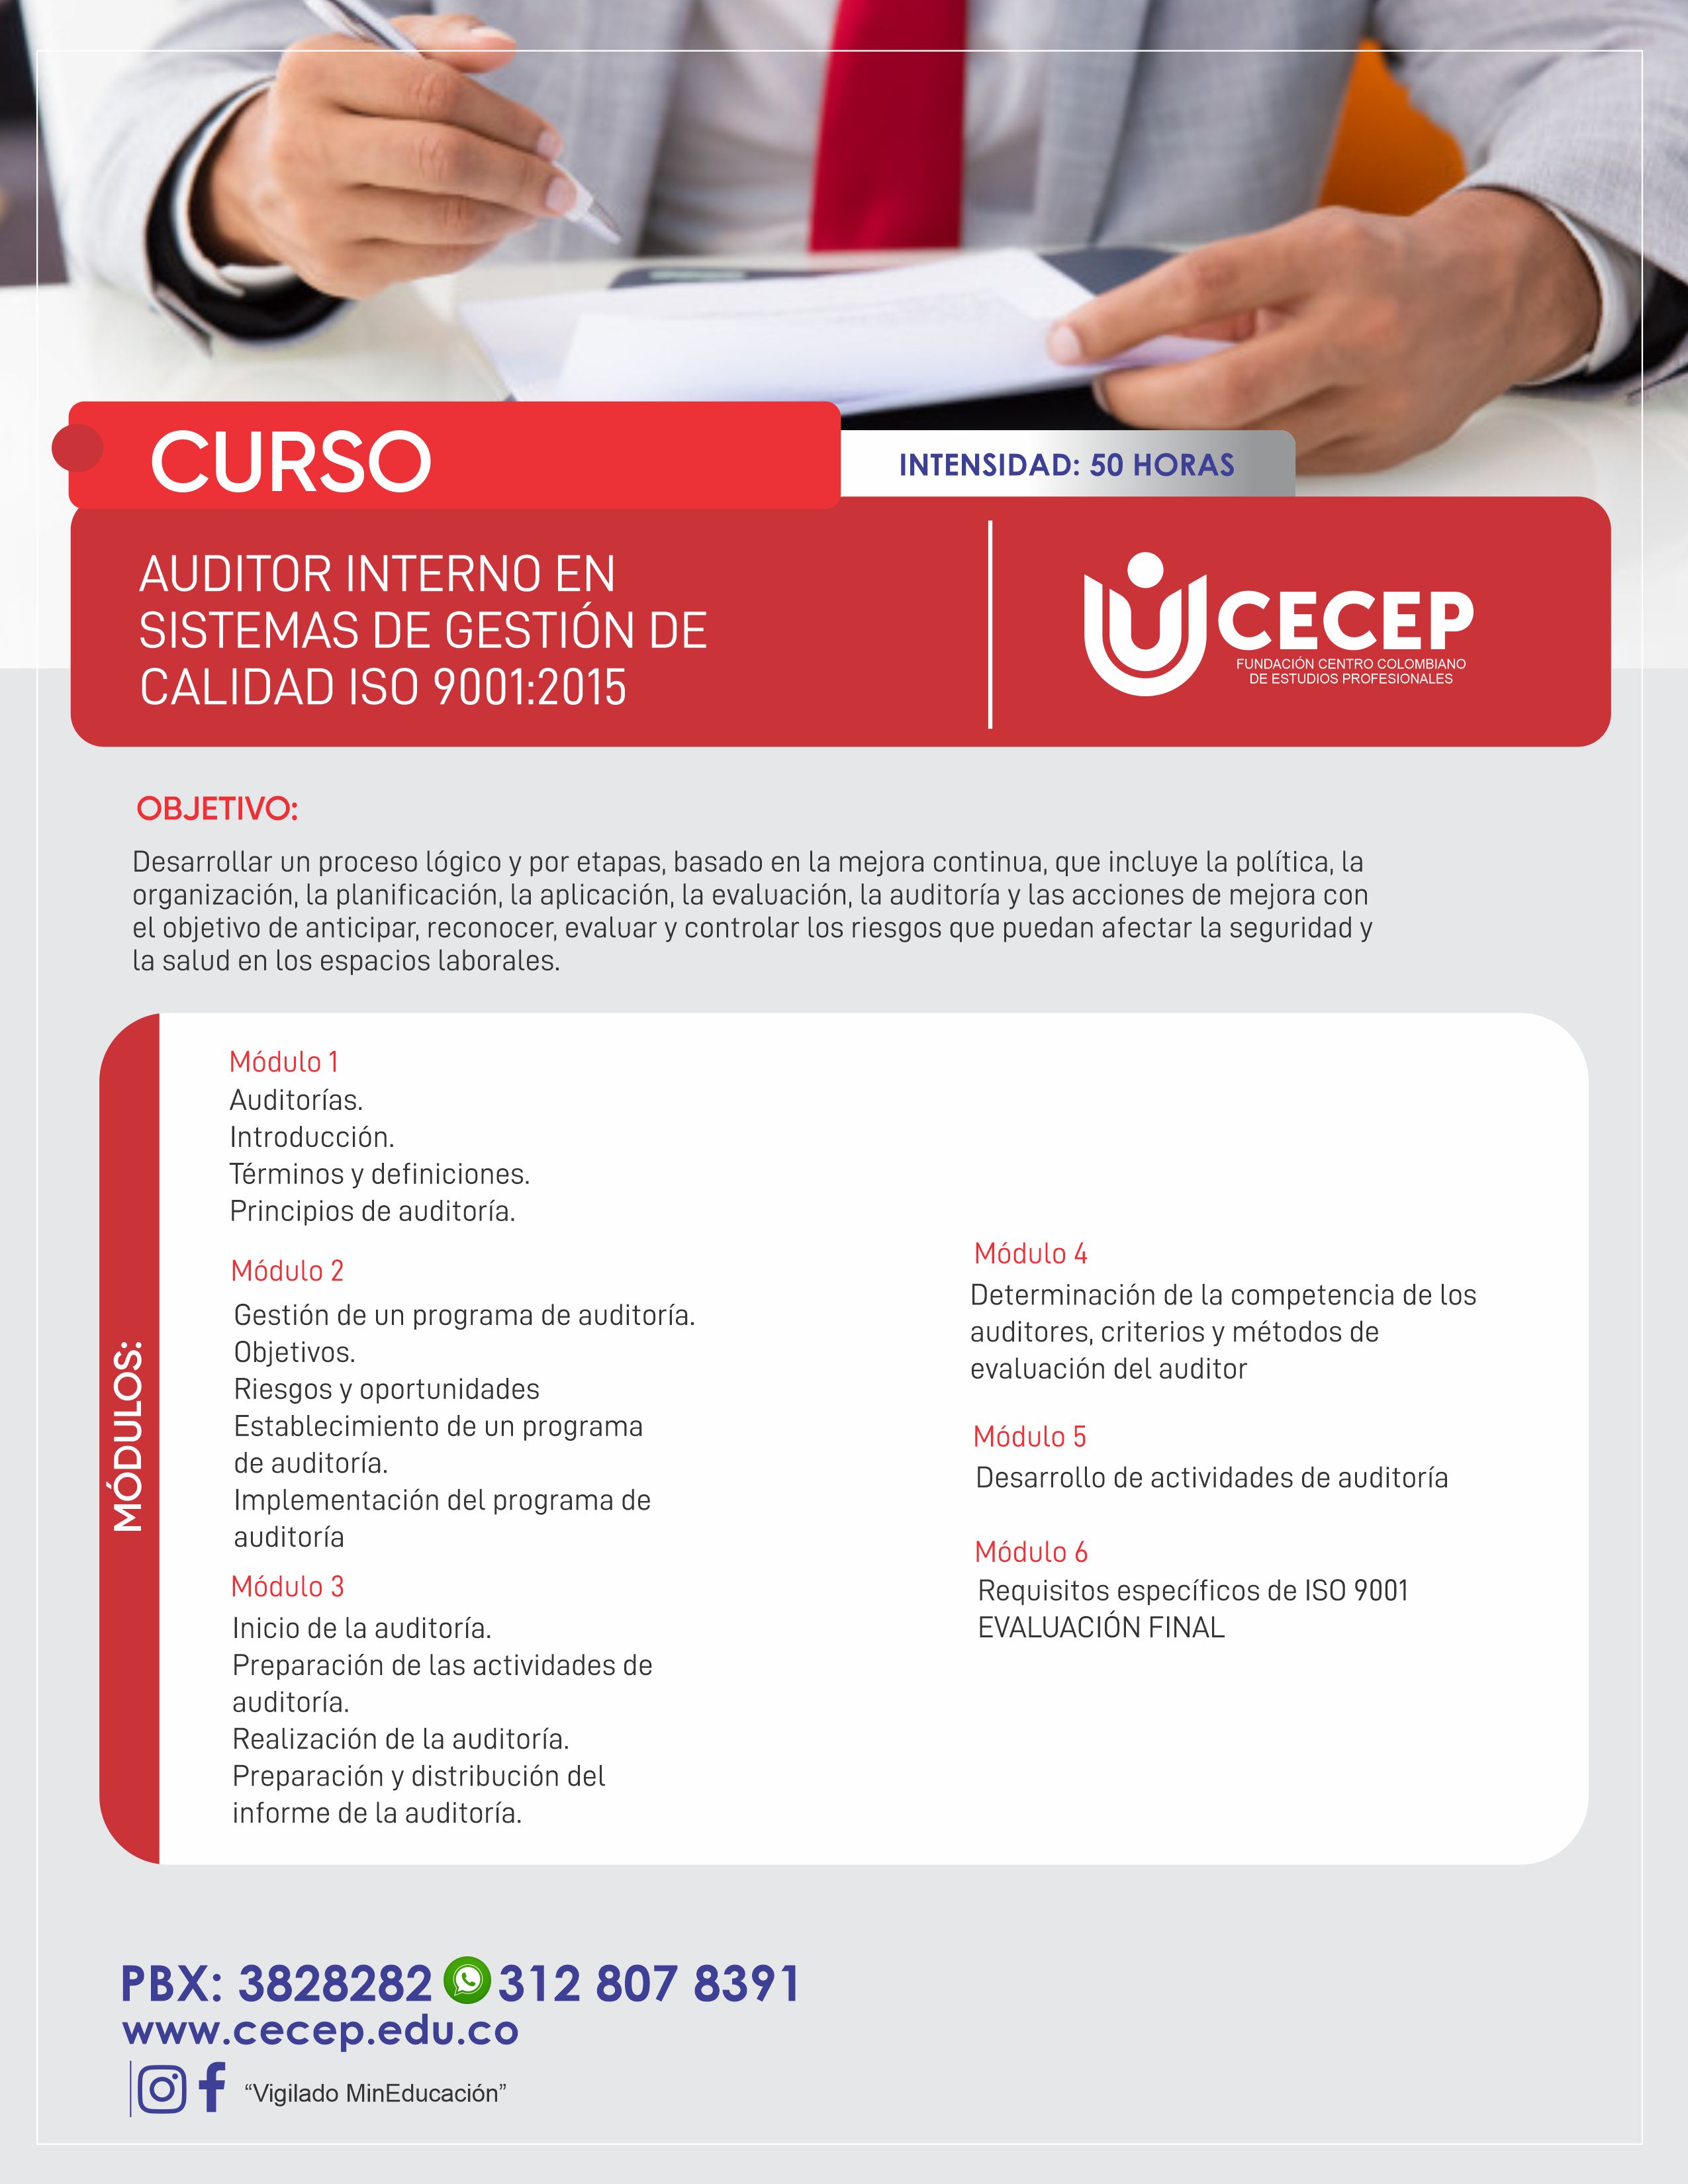 Curso auditor interno en sistemas de gestión de calidad ISO 9001:2015